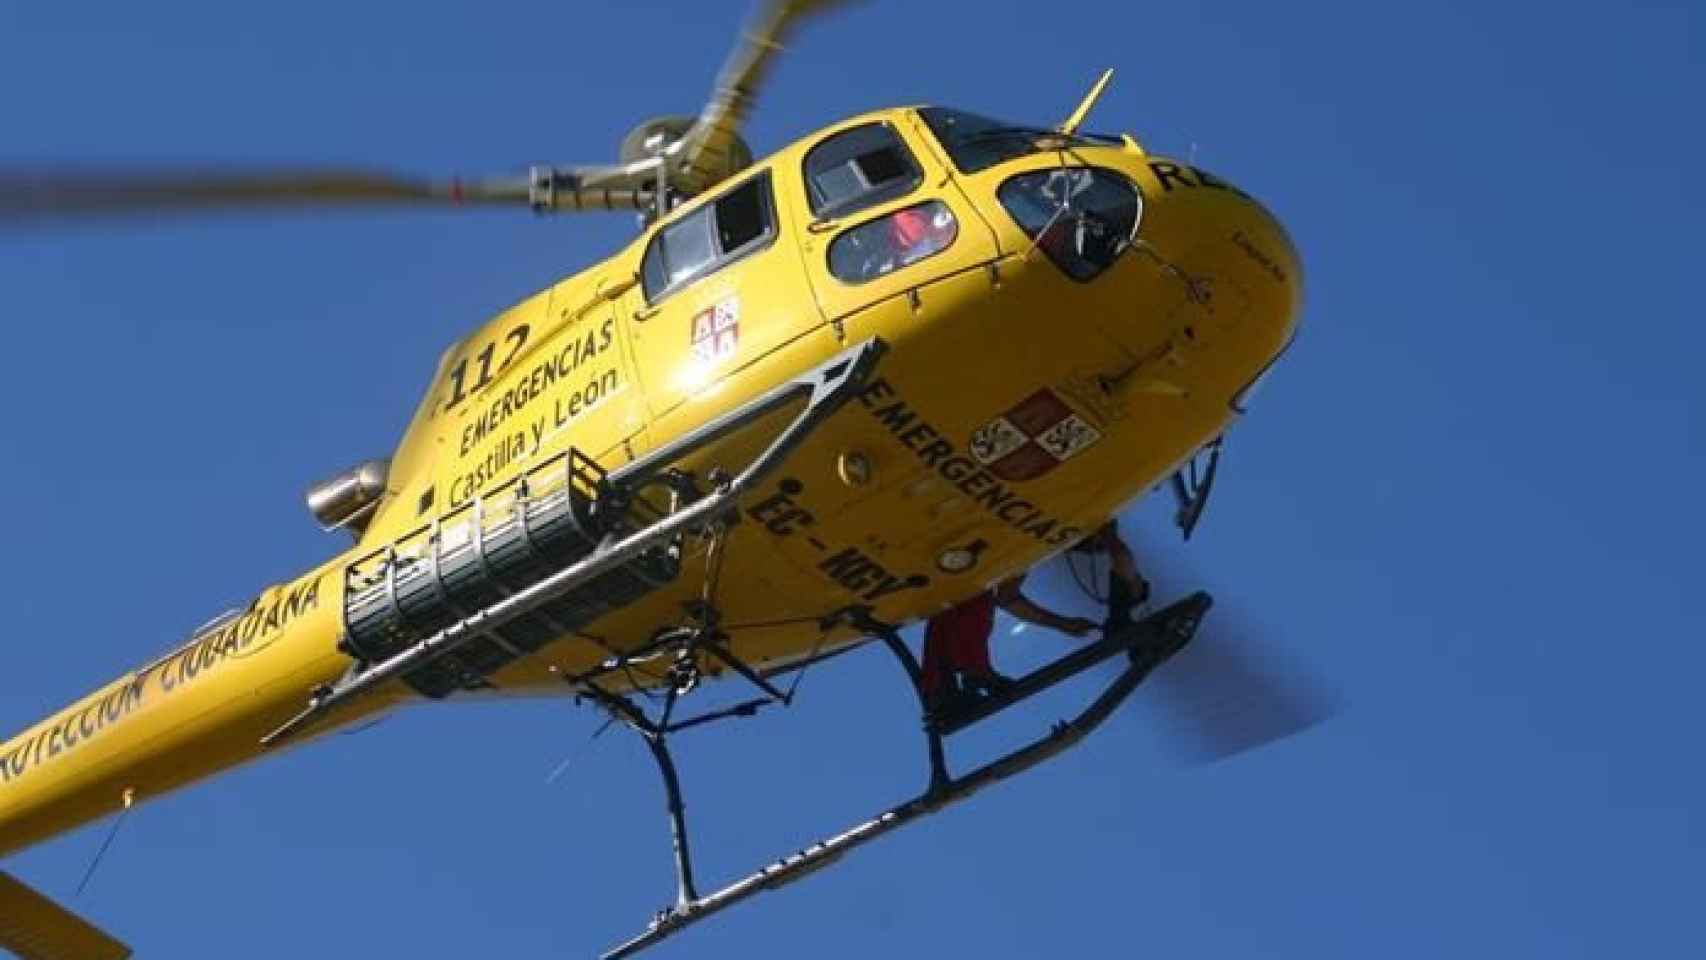 Helicoptero rescate emergencias 112 valladolid 01 696x464